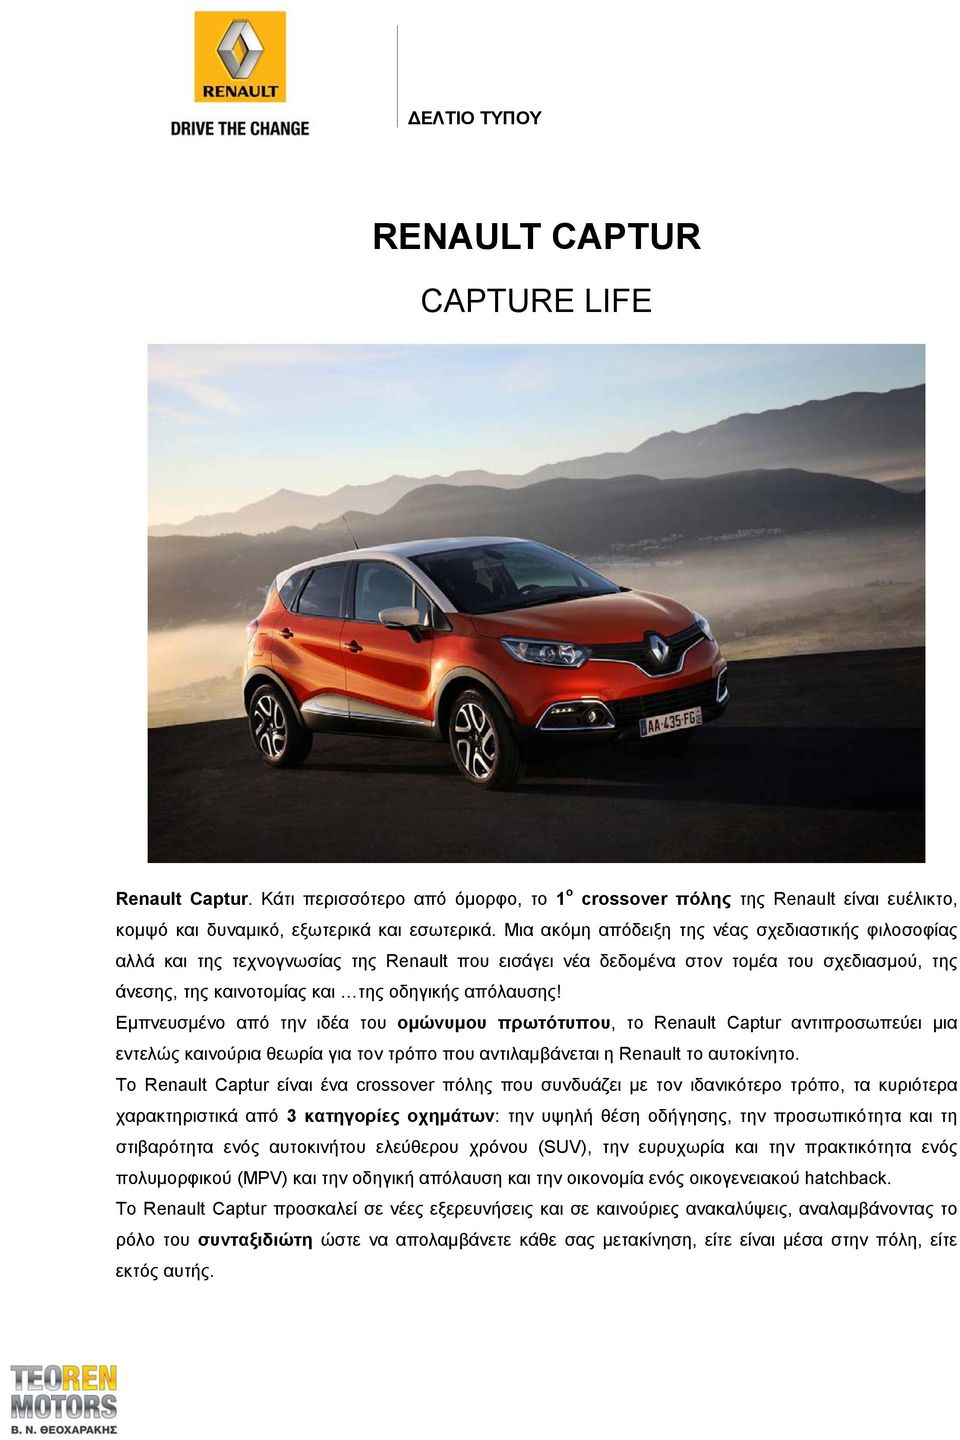 Εμπνευσμένο από την ιδέα του ομώνυμου πρωτότυπου, το Renault Captur αντιπροσωπεύει μια εντελώς καινούρια θεωρία για τον τρόπο που αντιλαμβάνεται η Renault το αυτοκίνητο.